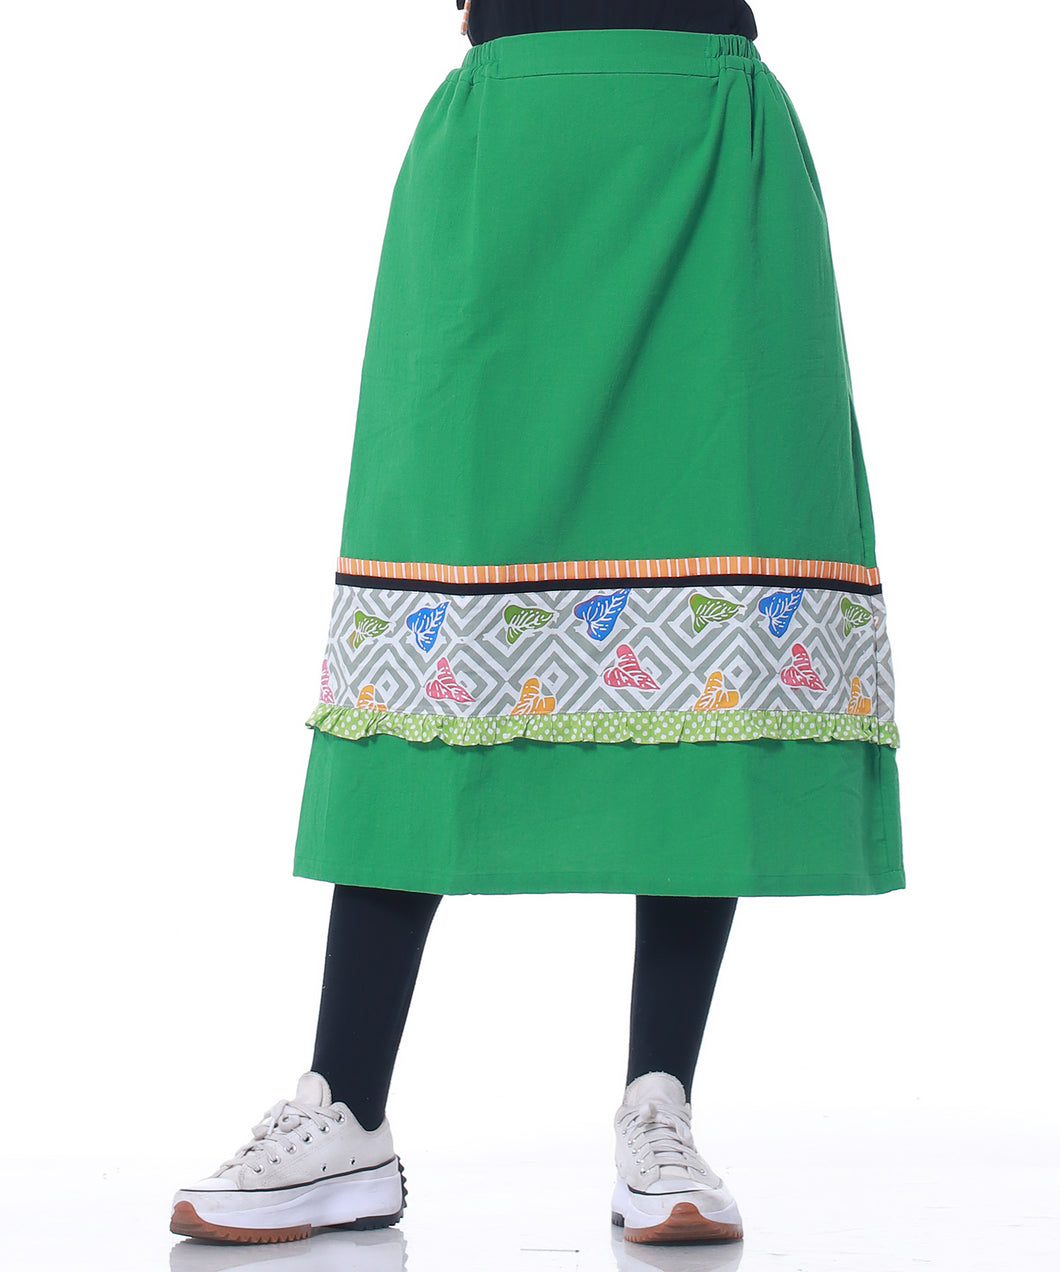 Greeny Skirt